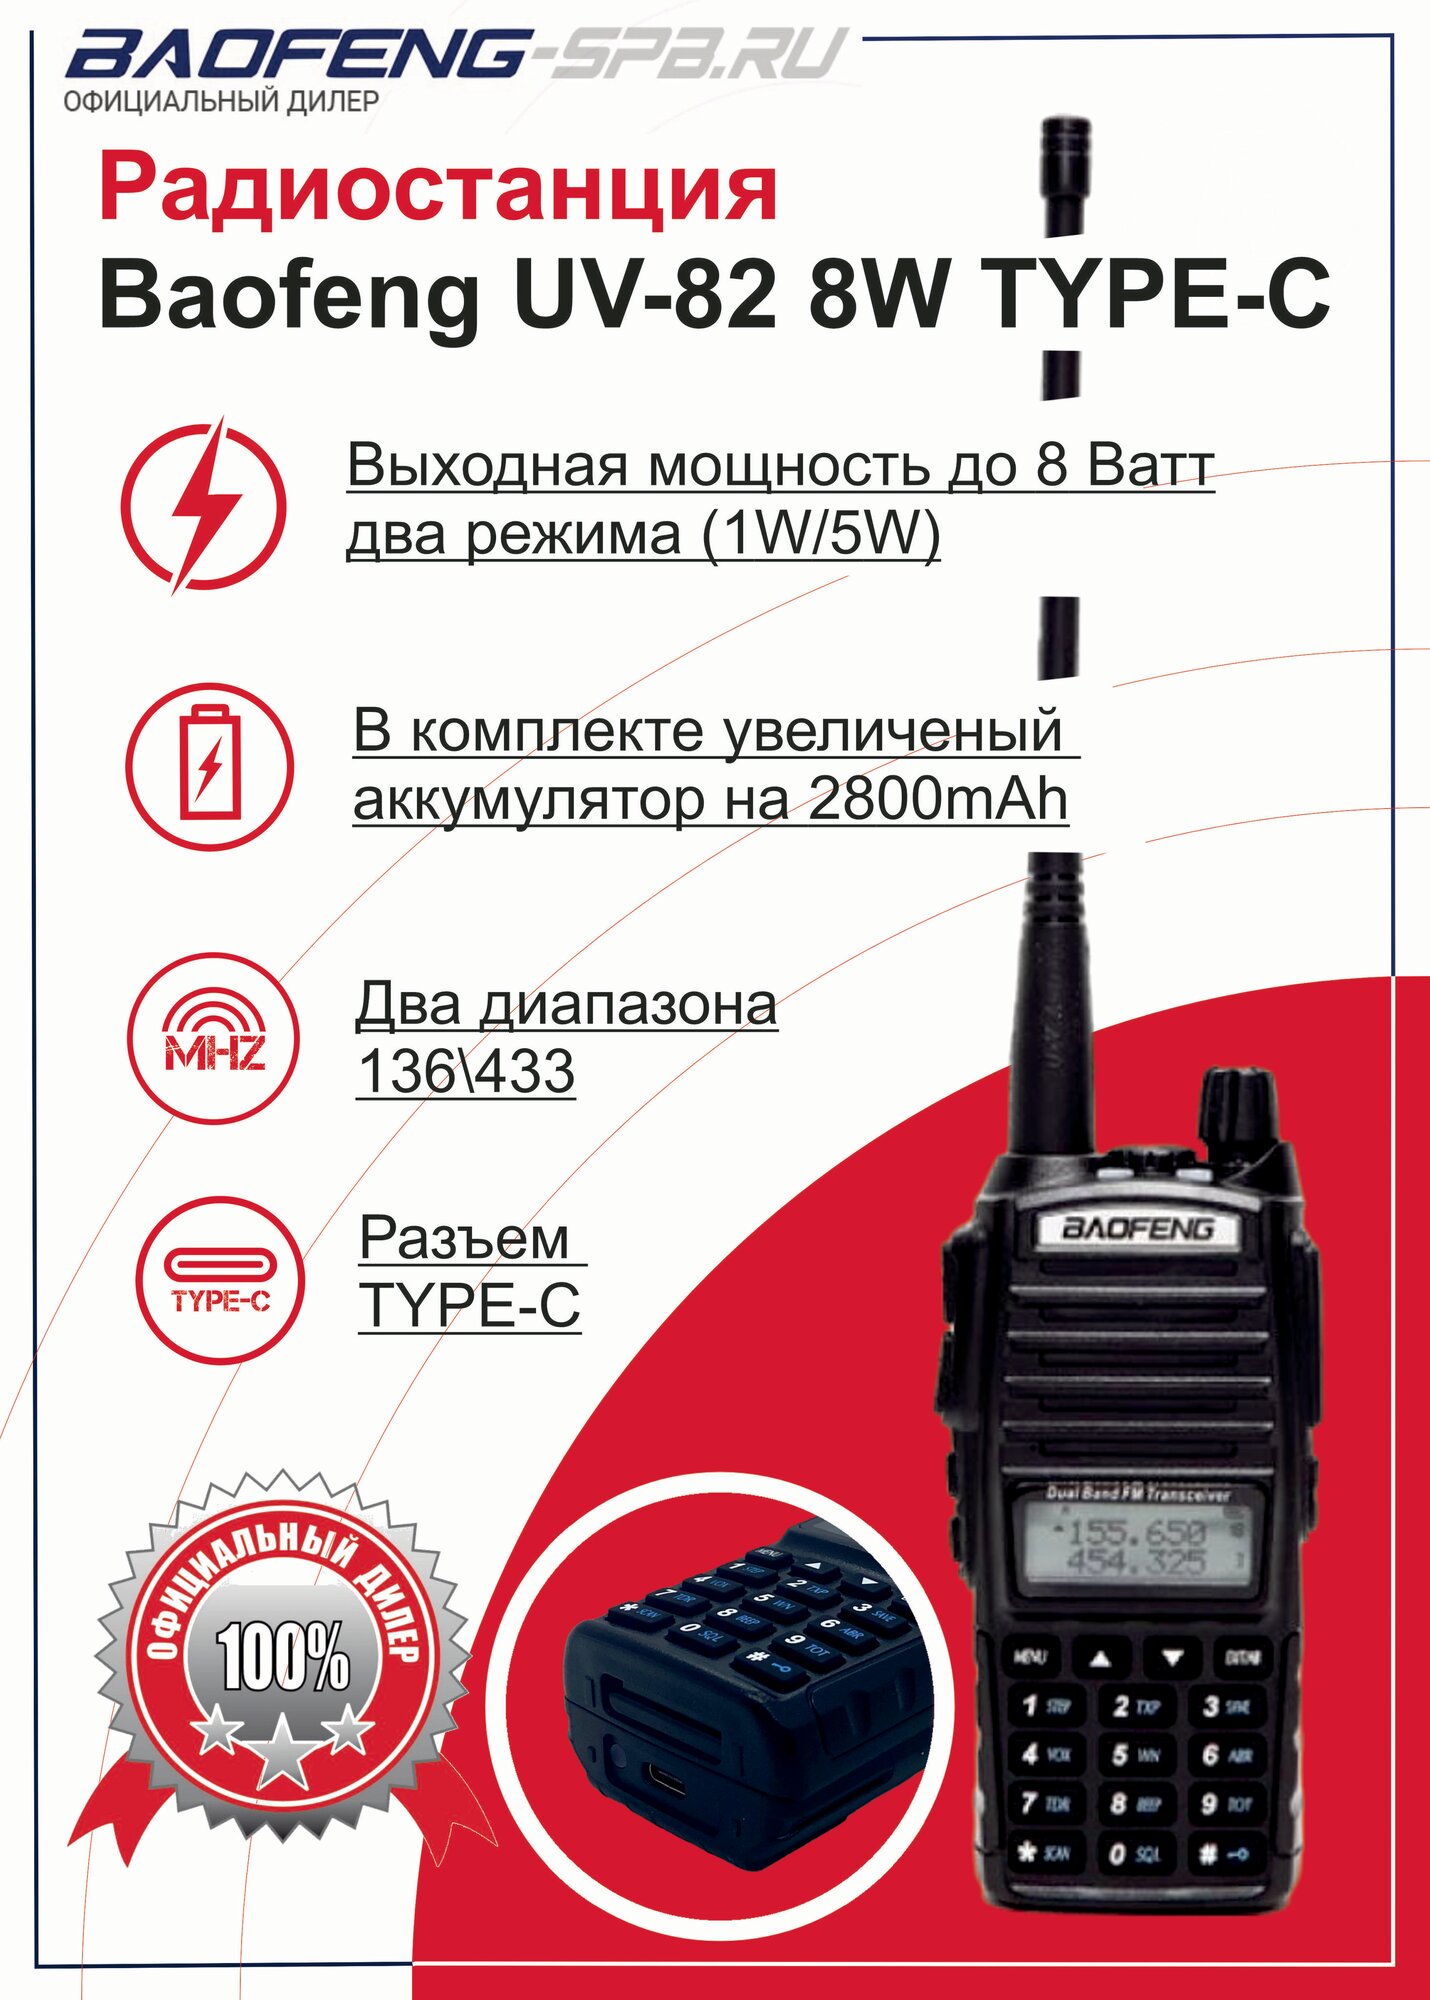 Рация Baofeng UV-82 (8W) портативная, полупрофессиональная с антенной, TYPE-C